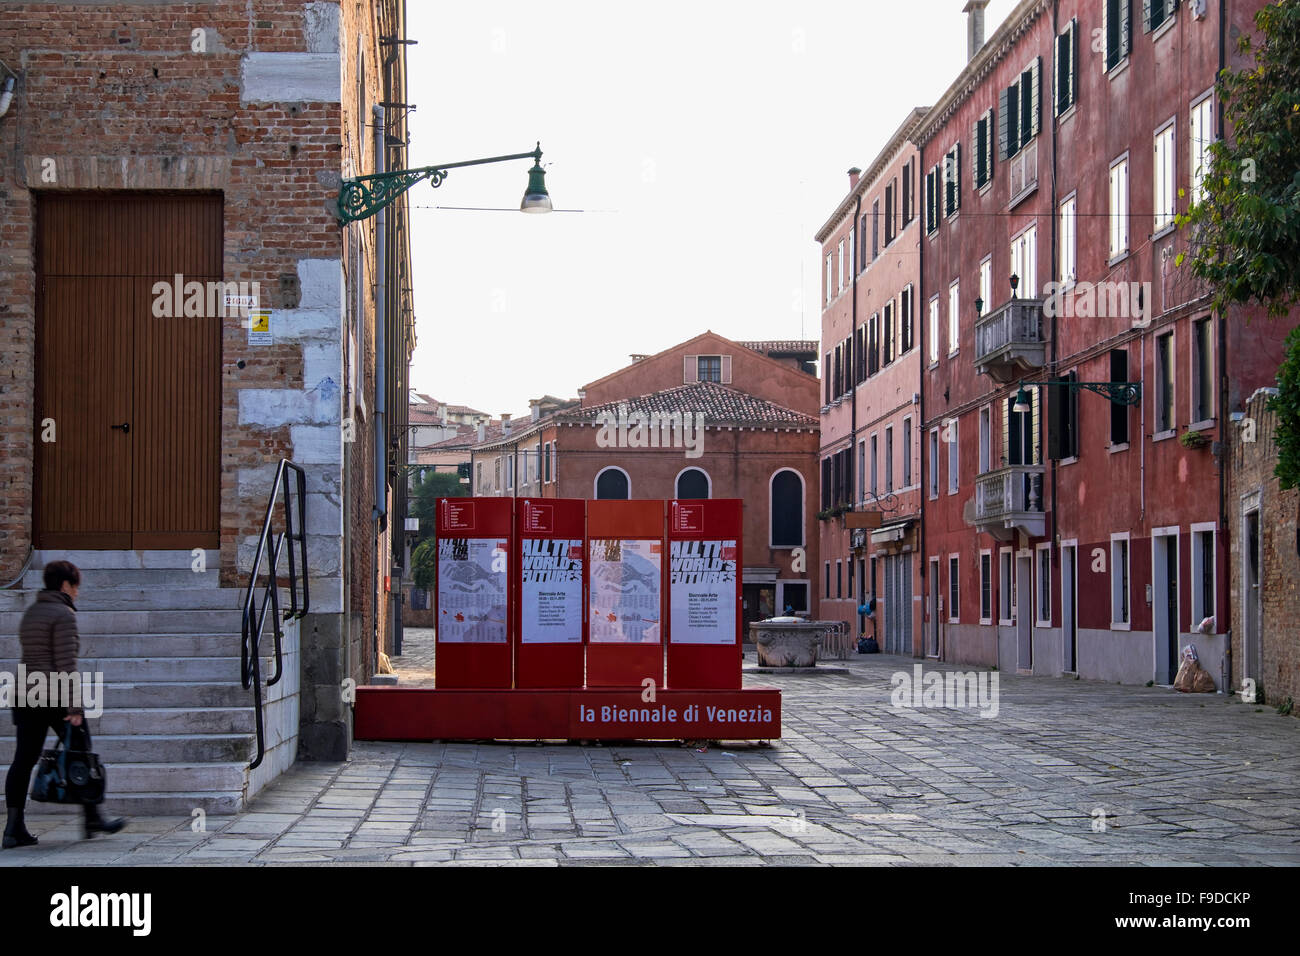 Venedig, Castello. 2015 Venedig Biennale Schild am Eingang zum Arsenale Teil der internationalen Kunstausstellung der Biennale. La Biennale di Venezia Stockfoto